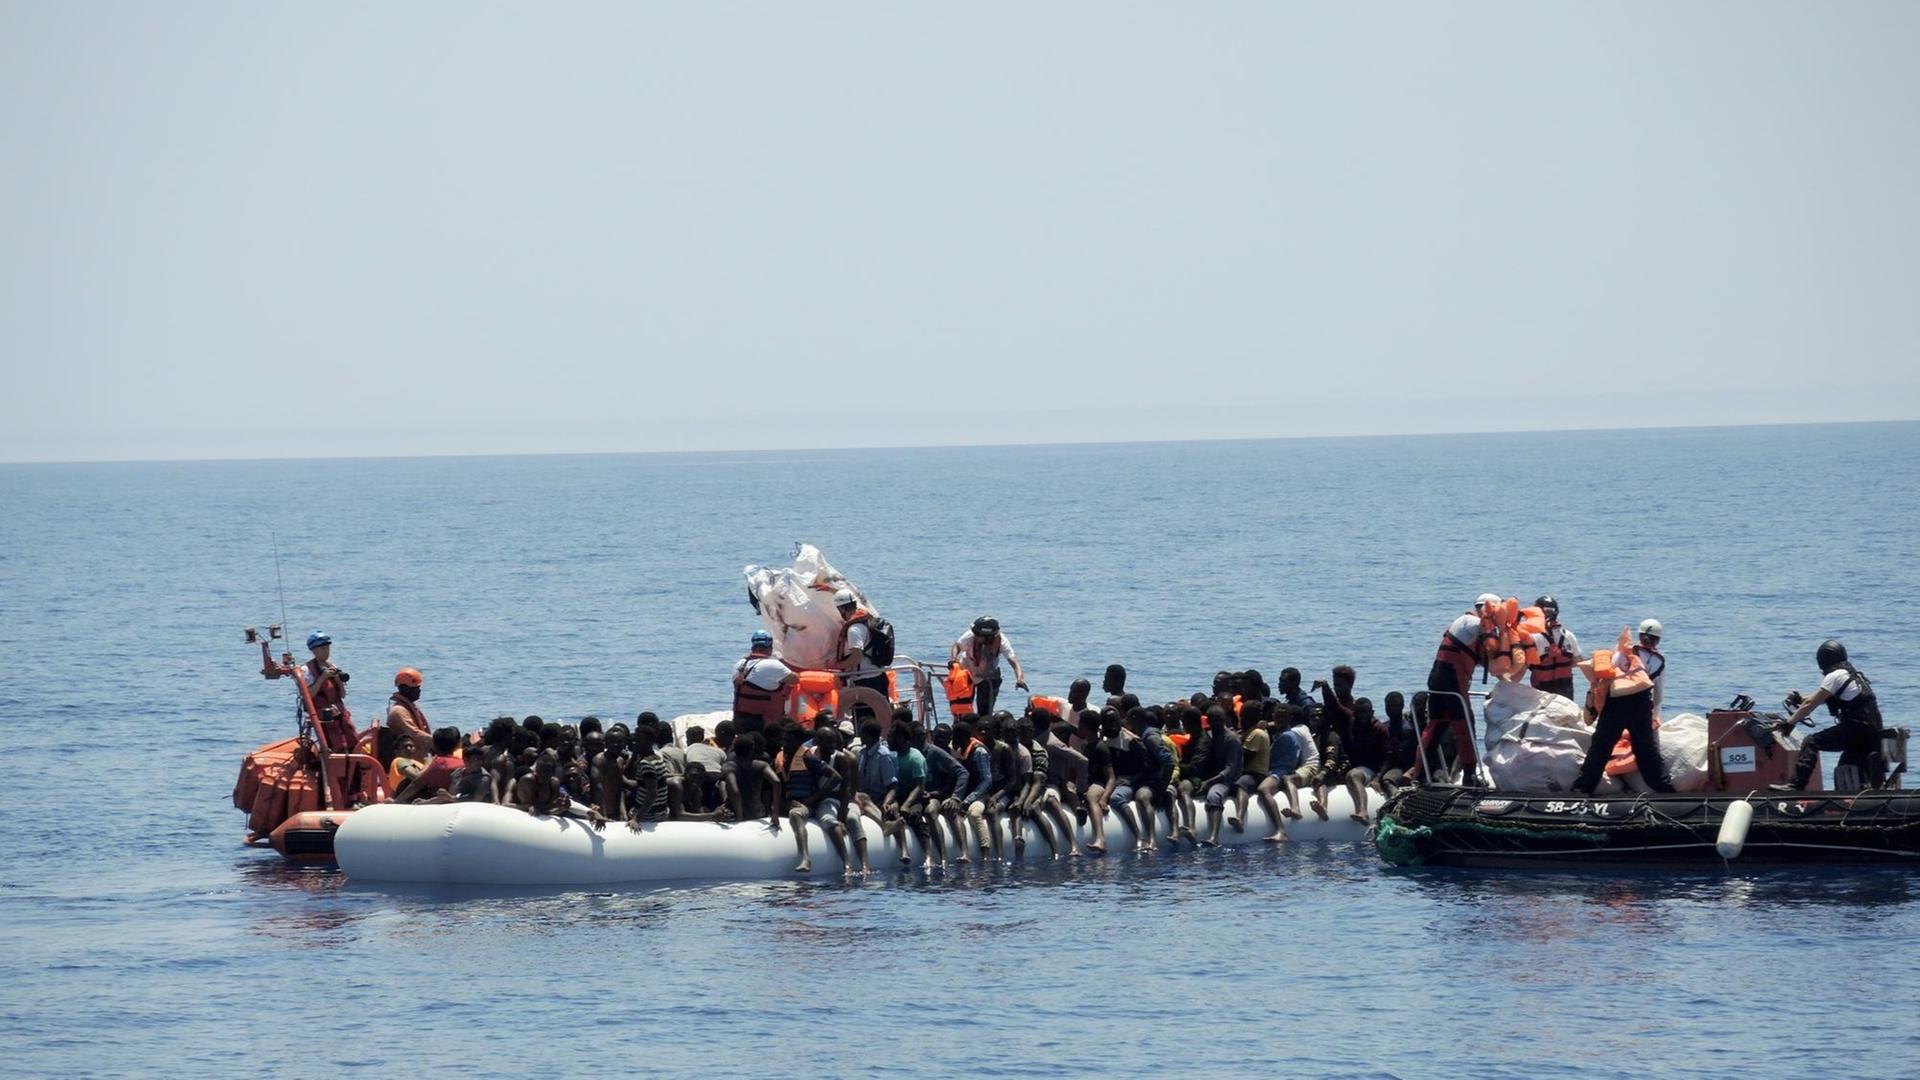 Rettungskräfte der Hilfsorganisationen Ärzte ohne Grenzen und SOS Méditerranée nähern sich einem überfüllten Schlauchboot im Mittelmeer. Die Menschen wurden auf das Rettungsschiff "Aquarius" gebracht.